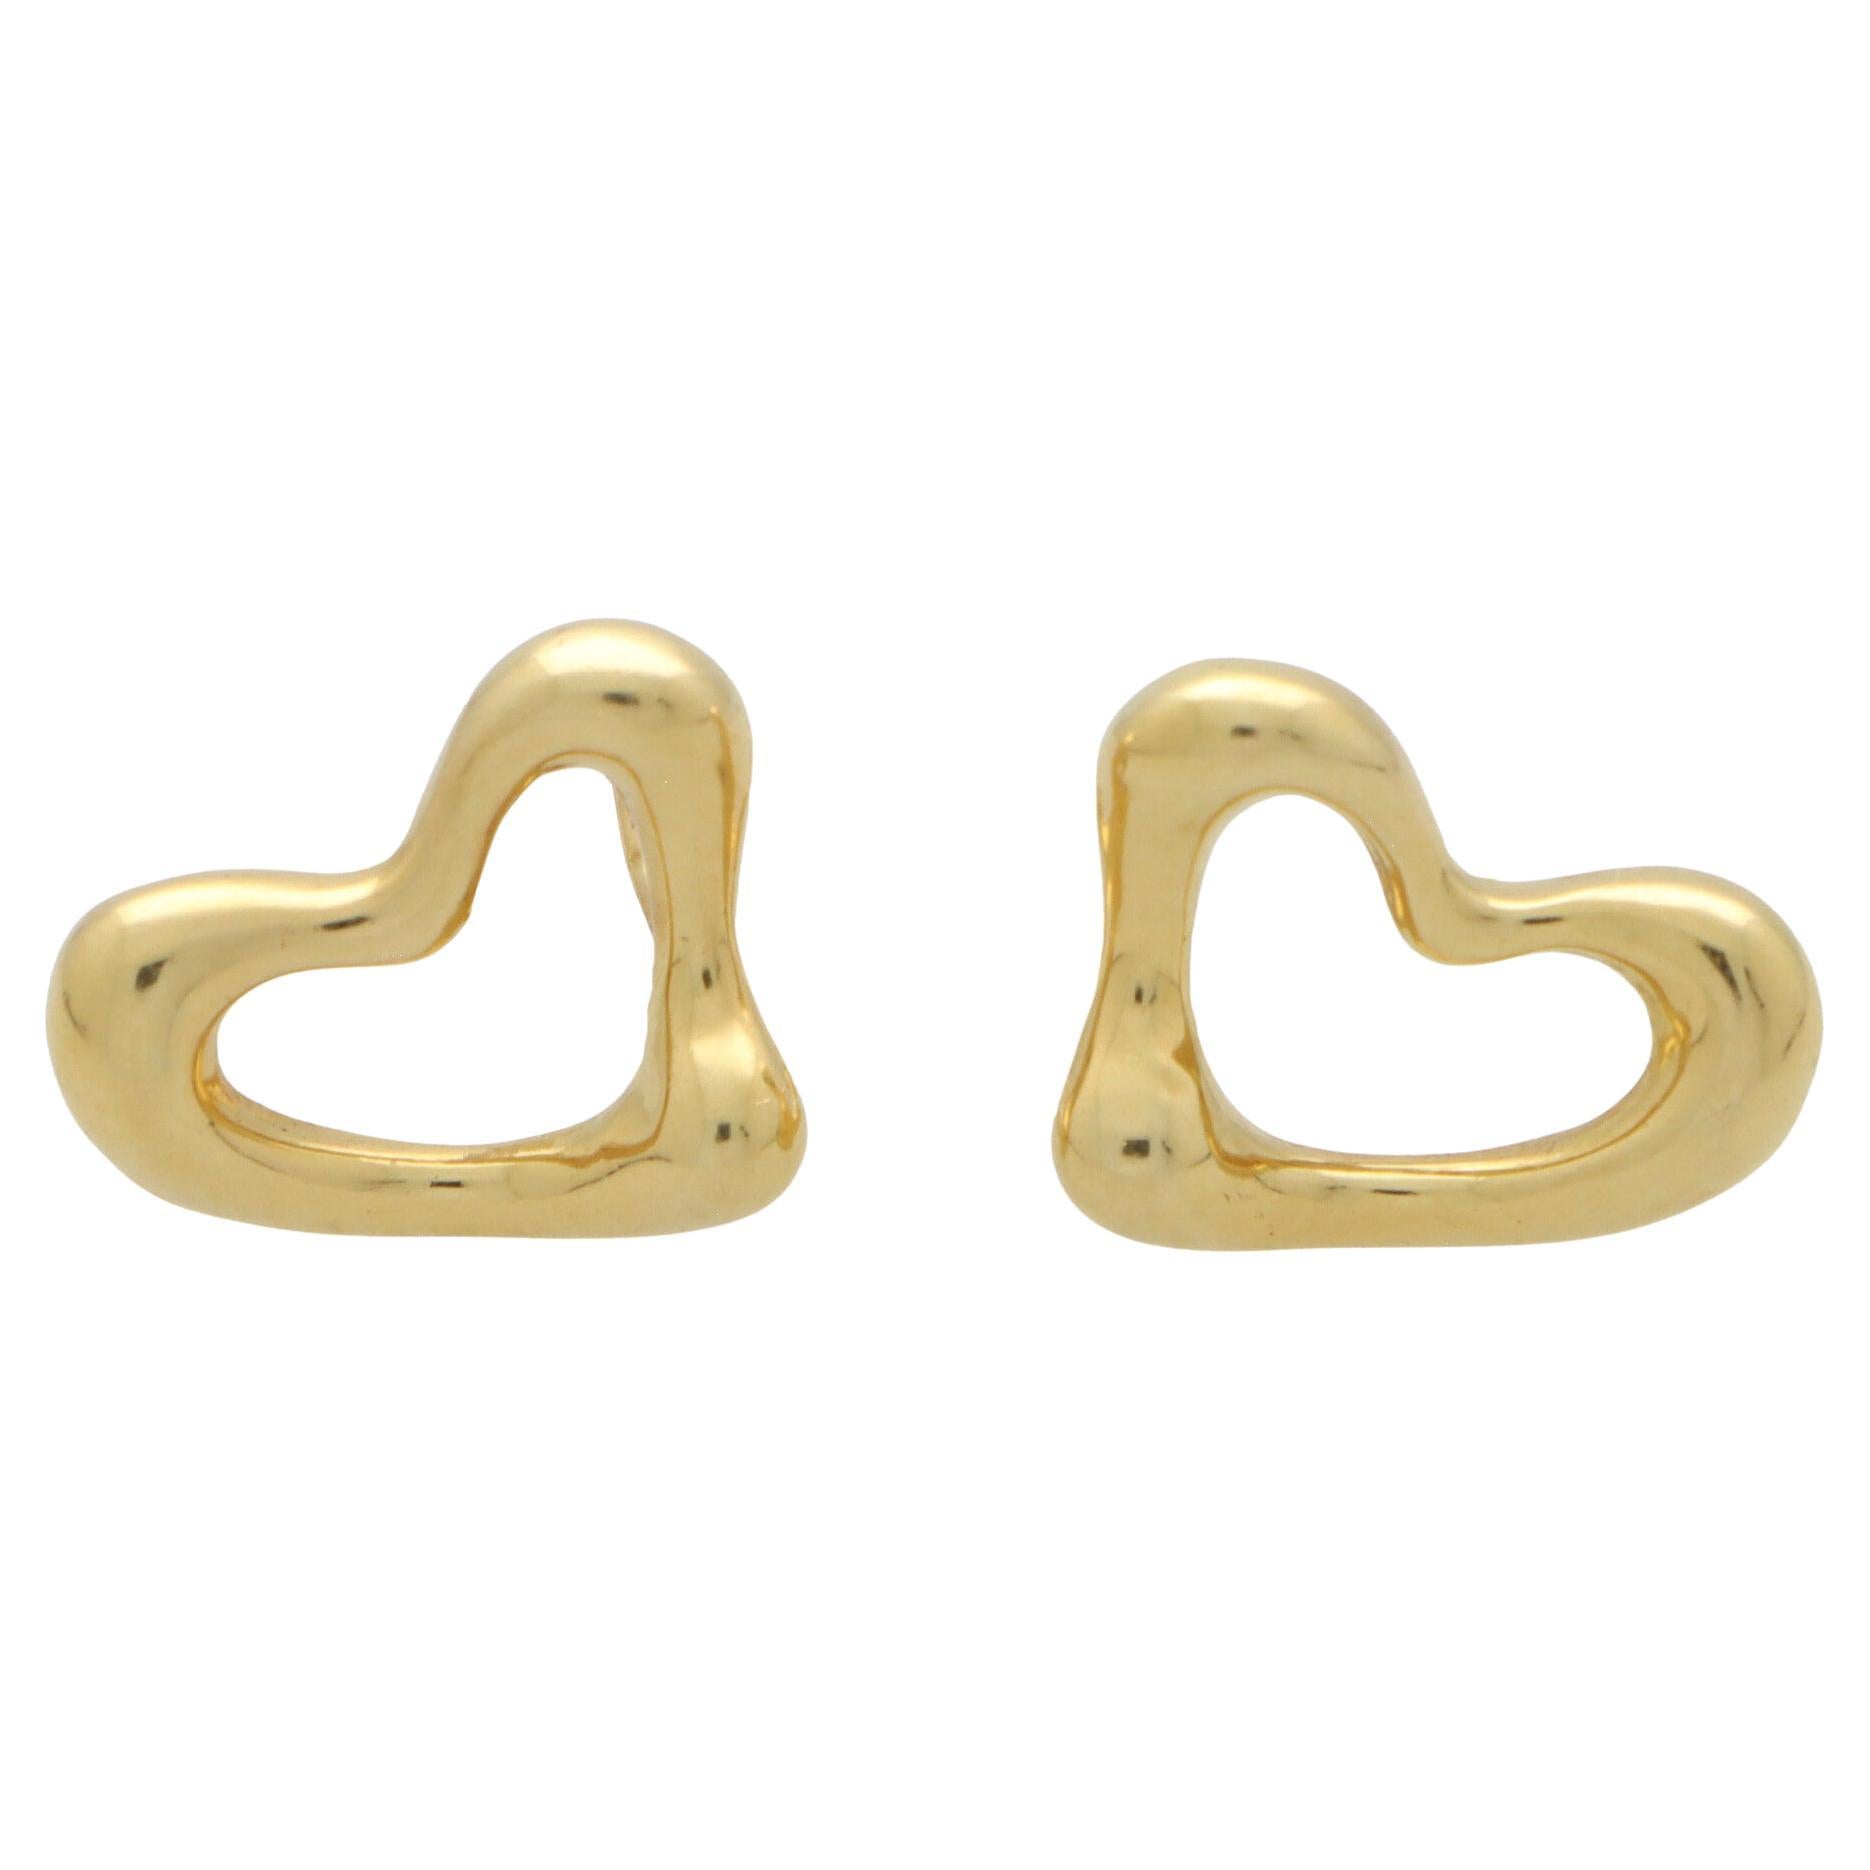 Tiffany Heart Earrings - 25 For Sale on 1stDibs | tiffany heart 